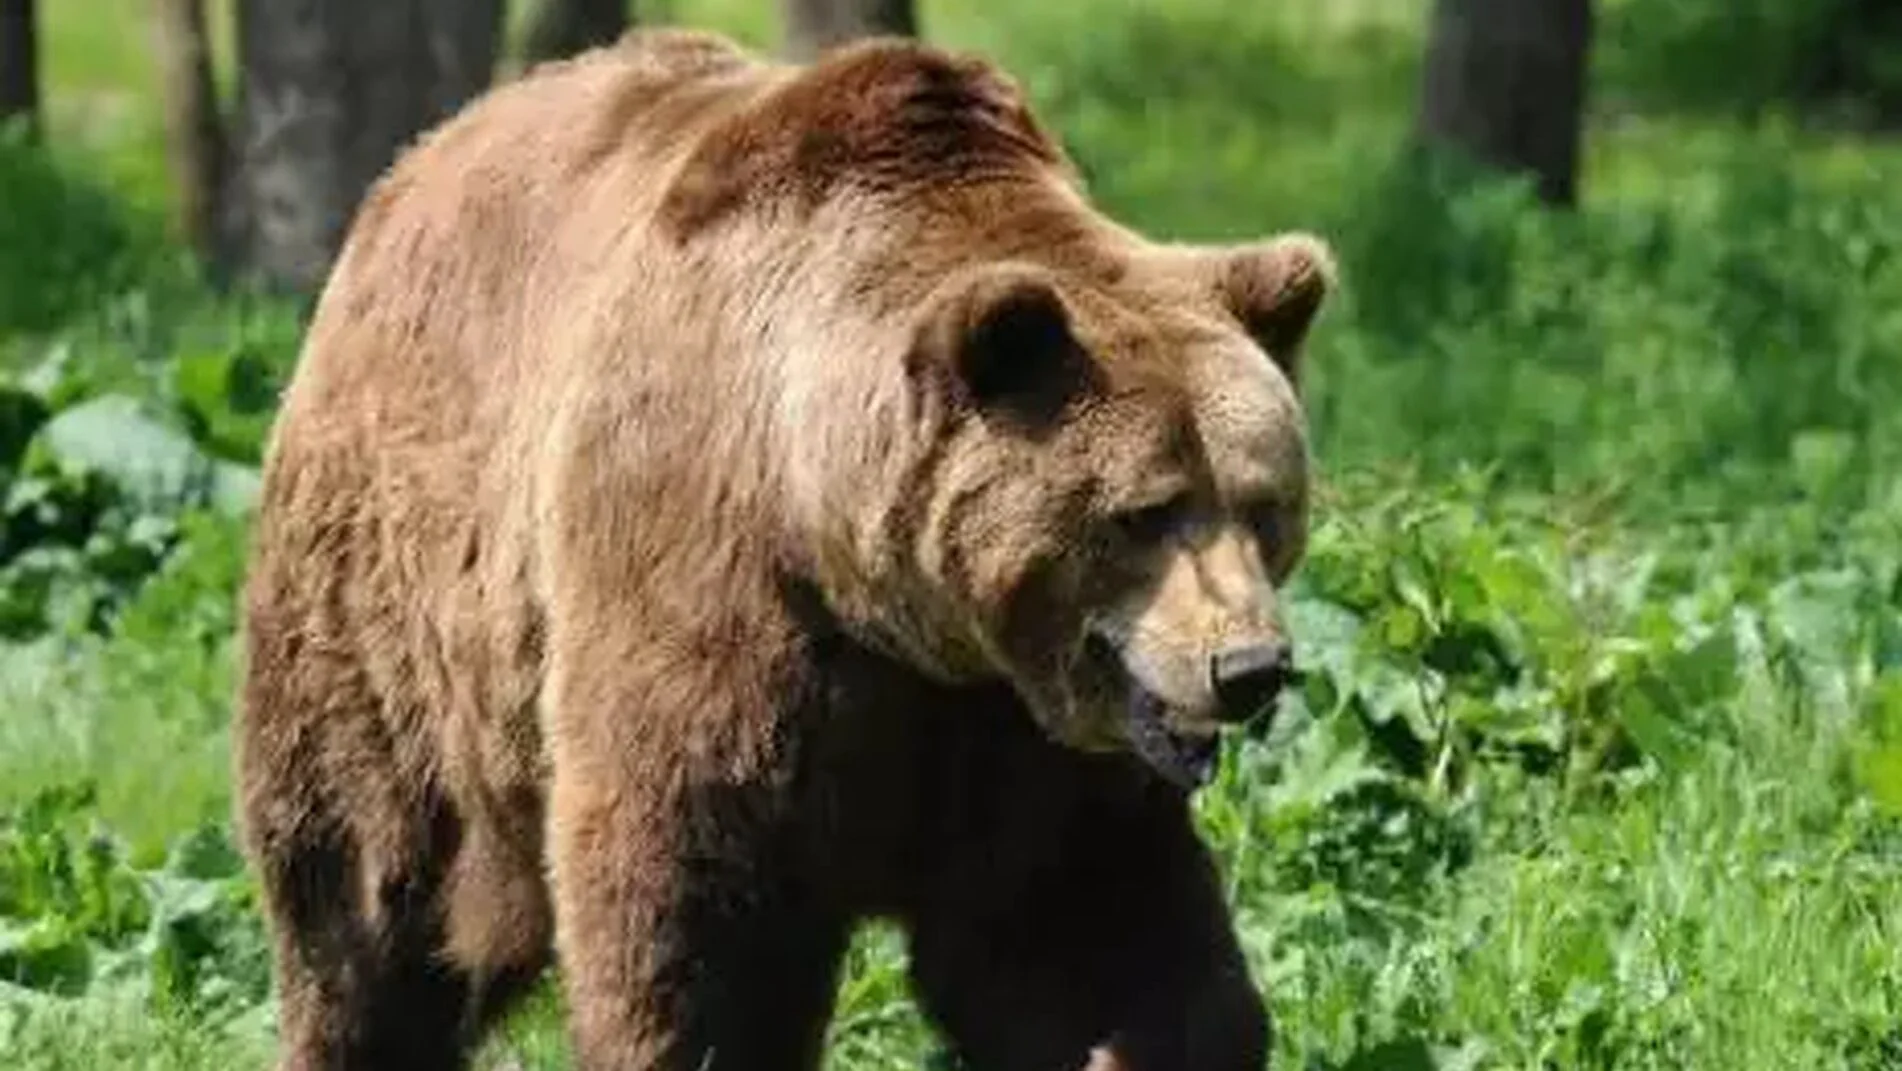 Turista muşcată de urs, la Vidraru: „M-am gândit că vrea să fim prieteni”